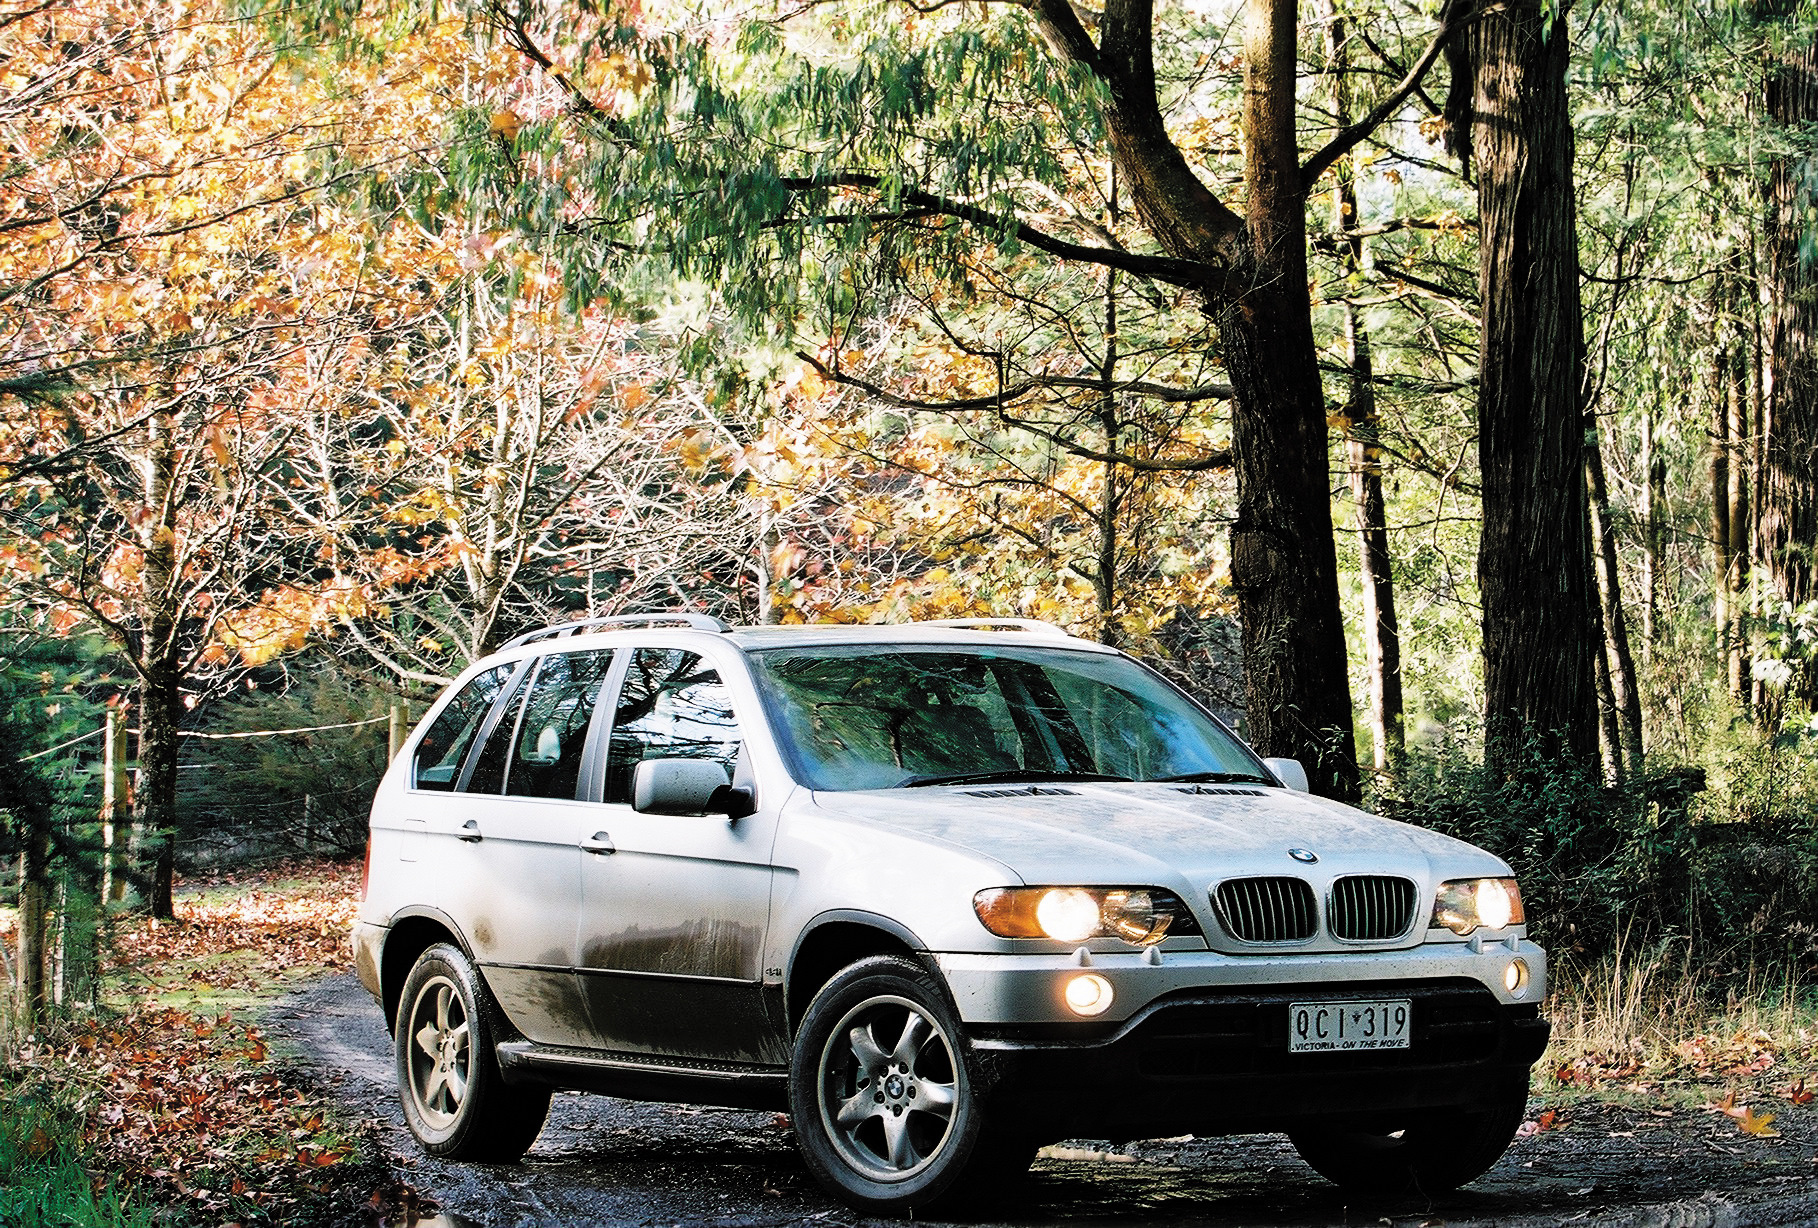 Bmw x5 2003. BMW x5 e53 1999. BMW x5 e53 2000. БМВ х5 1999-2003. BMW x5 e53 зеленый.